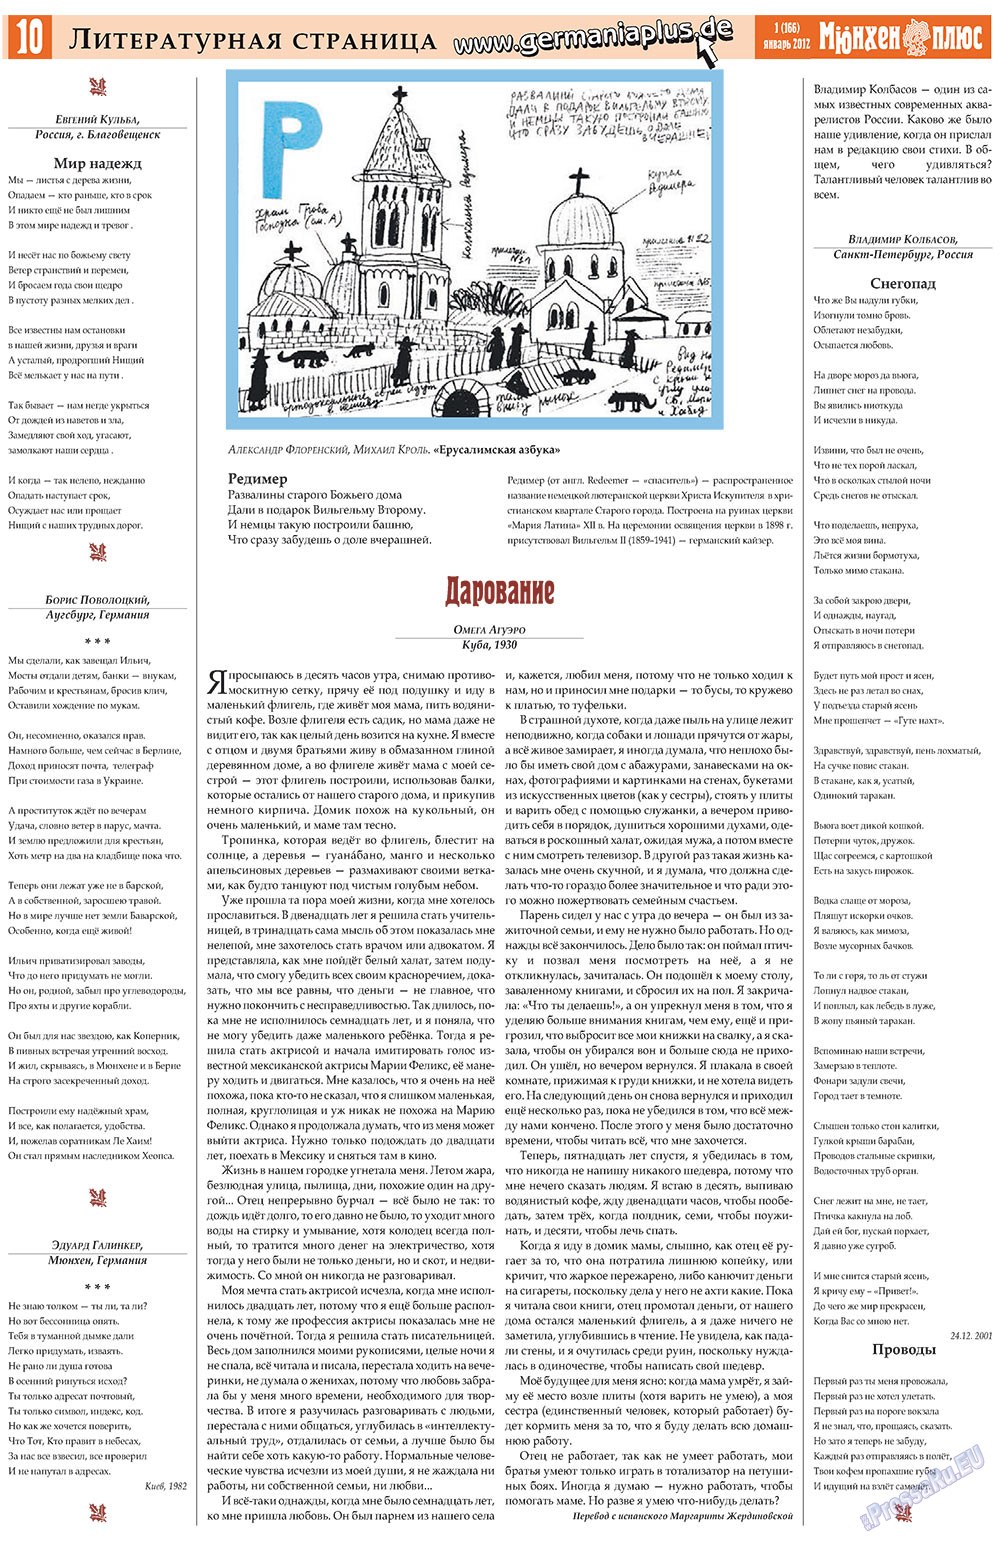 Германия плюс, газета. 2012 №1 стр.10